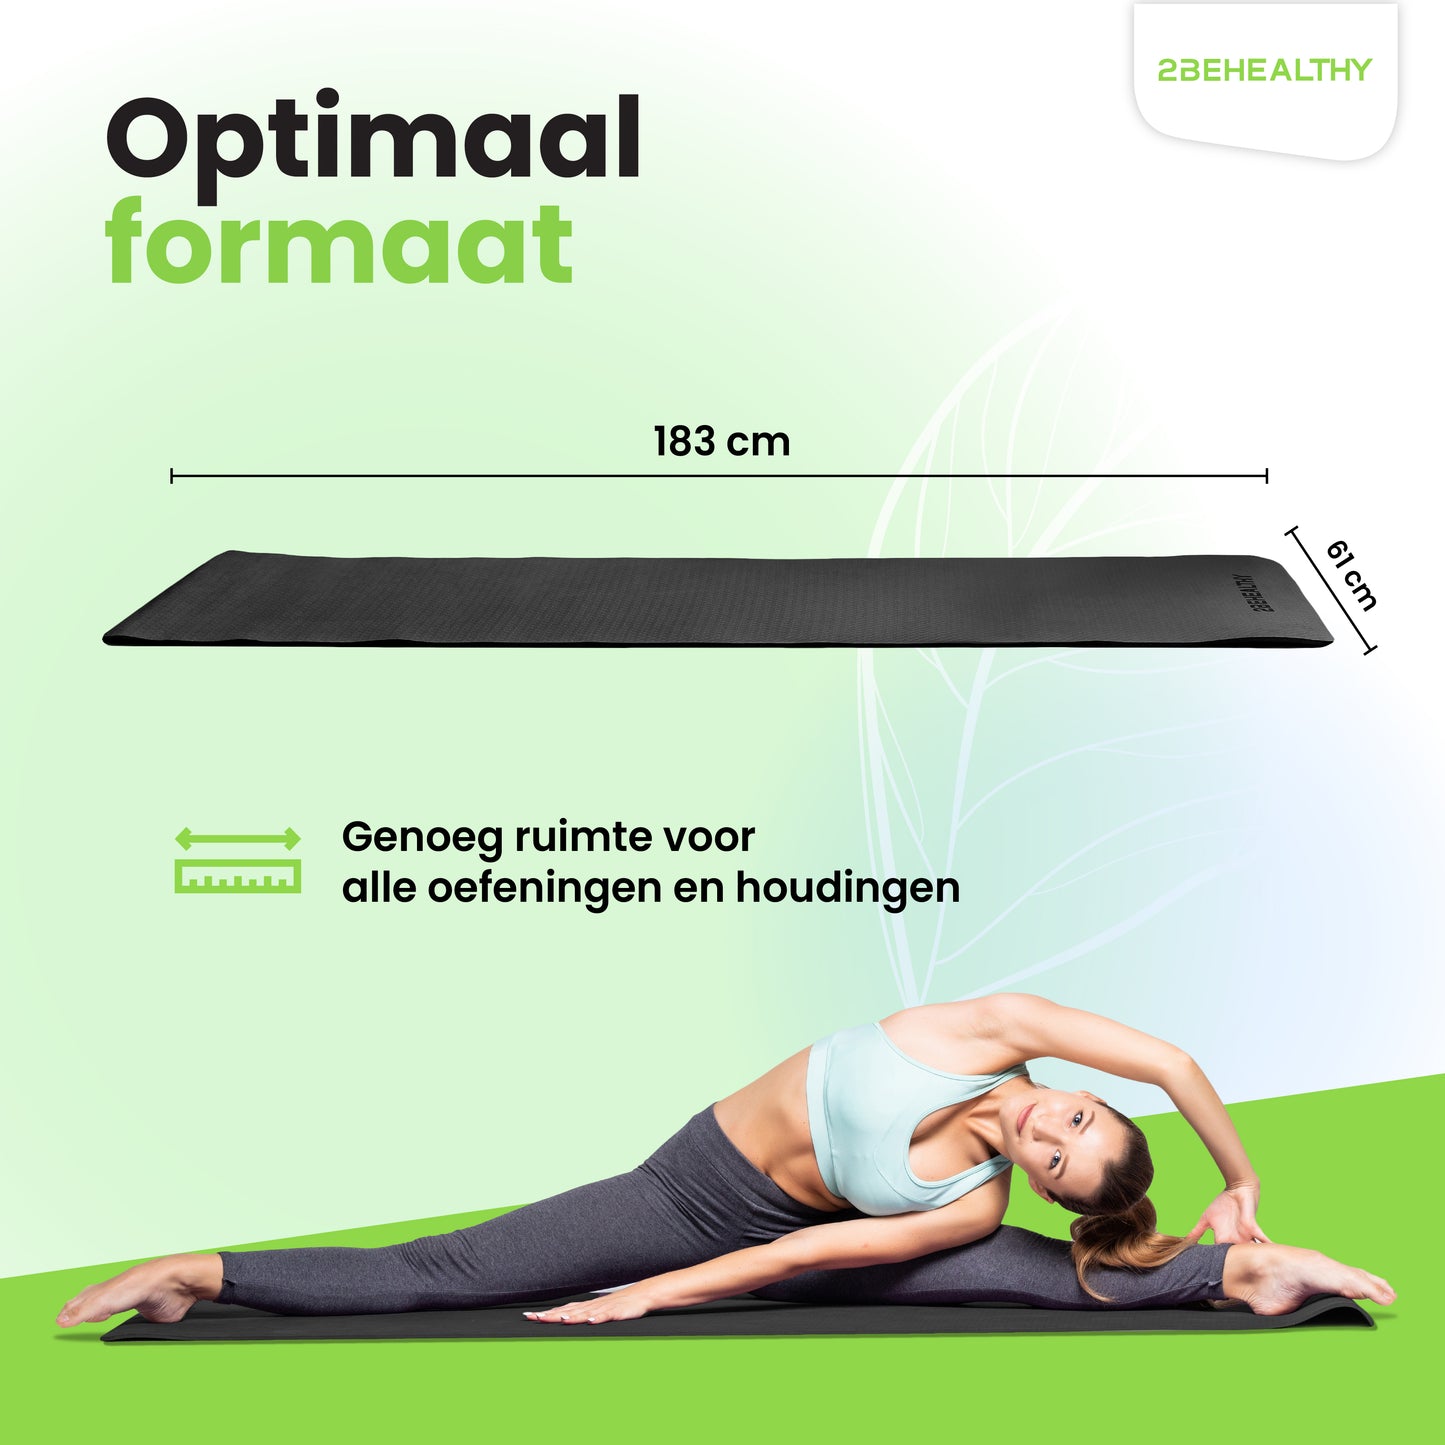 2BEHEALTHY® Yoga Mat Extra dik - 0,8 cm - Antislip - Sportmat